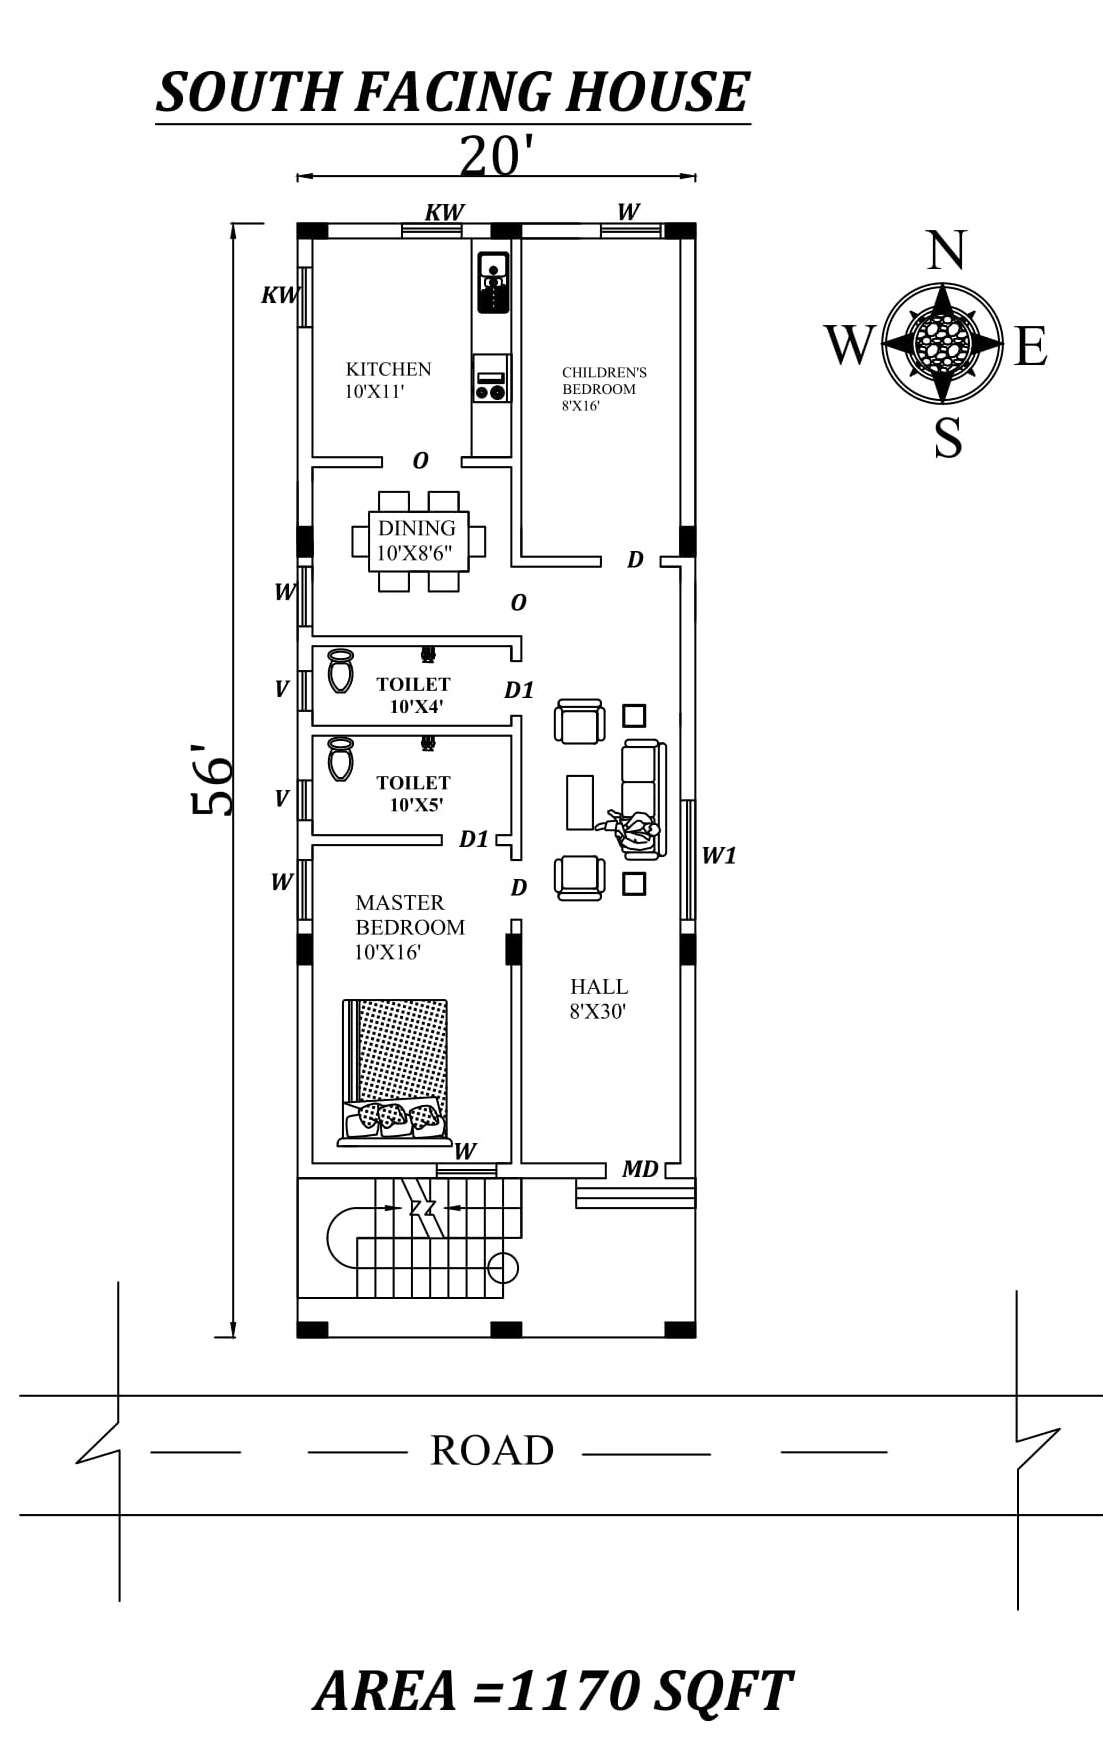 20'x56' 2bhk South facing Houseplan layout as per Vastu